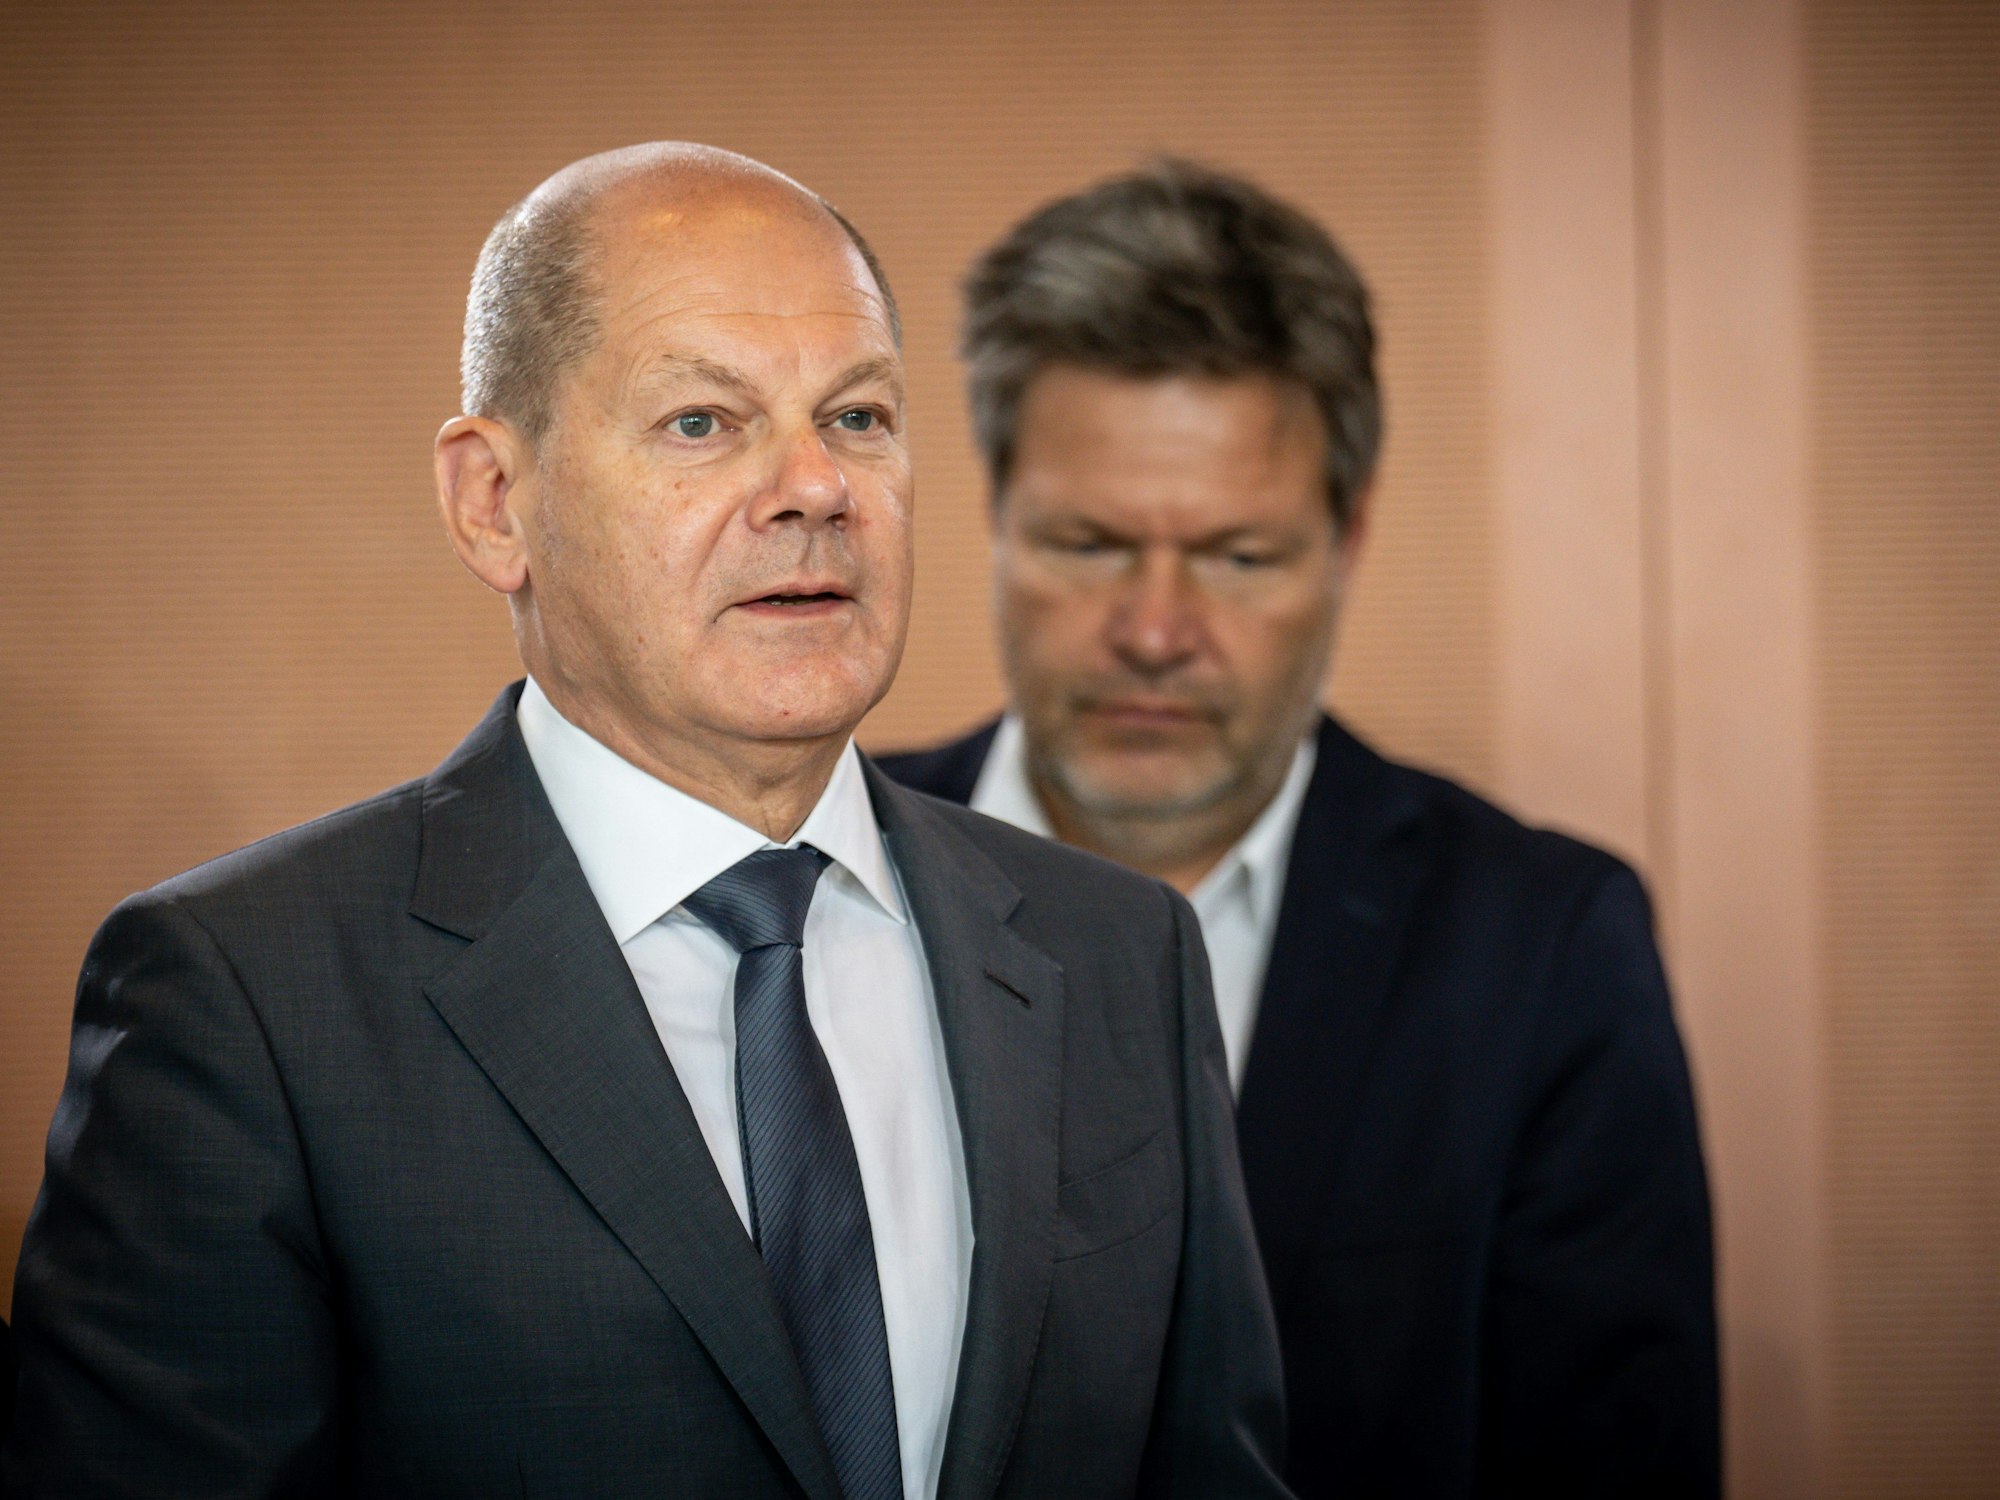 Bundeskanzler Olaf Scholz (SPD) und Wirtschaftsminister Robert Habeck (Grüne, v.l.) bereiten sich auf Mangellagen vor. Das Foto zeigt beide am 22. Juni auf dem Weg zu einer Sitzung im Kanzleramt.